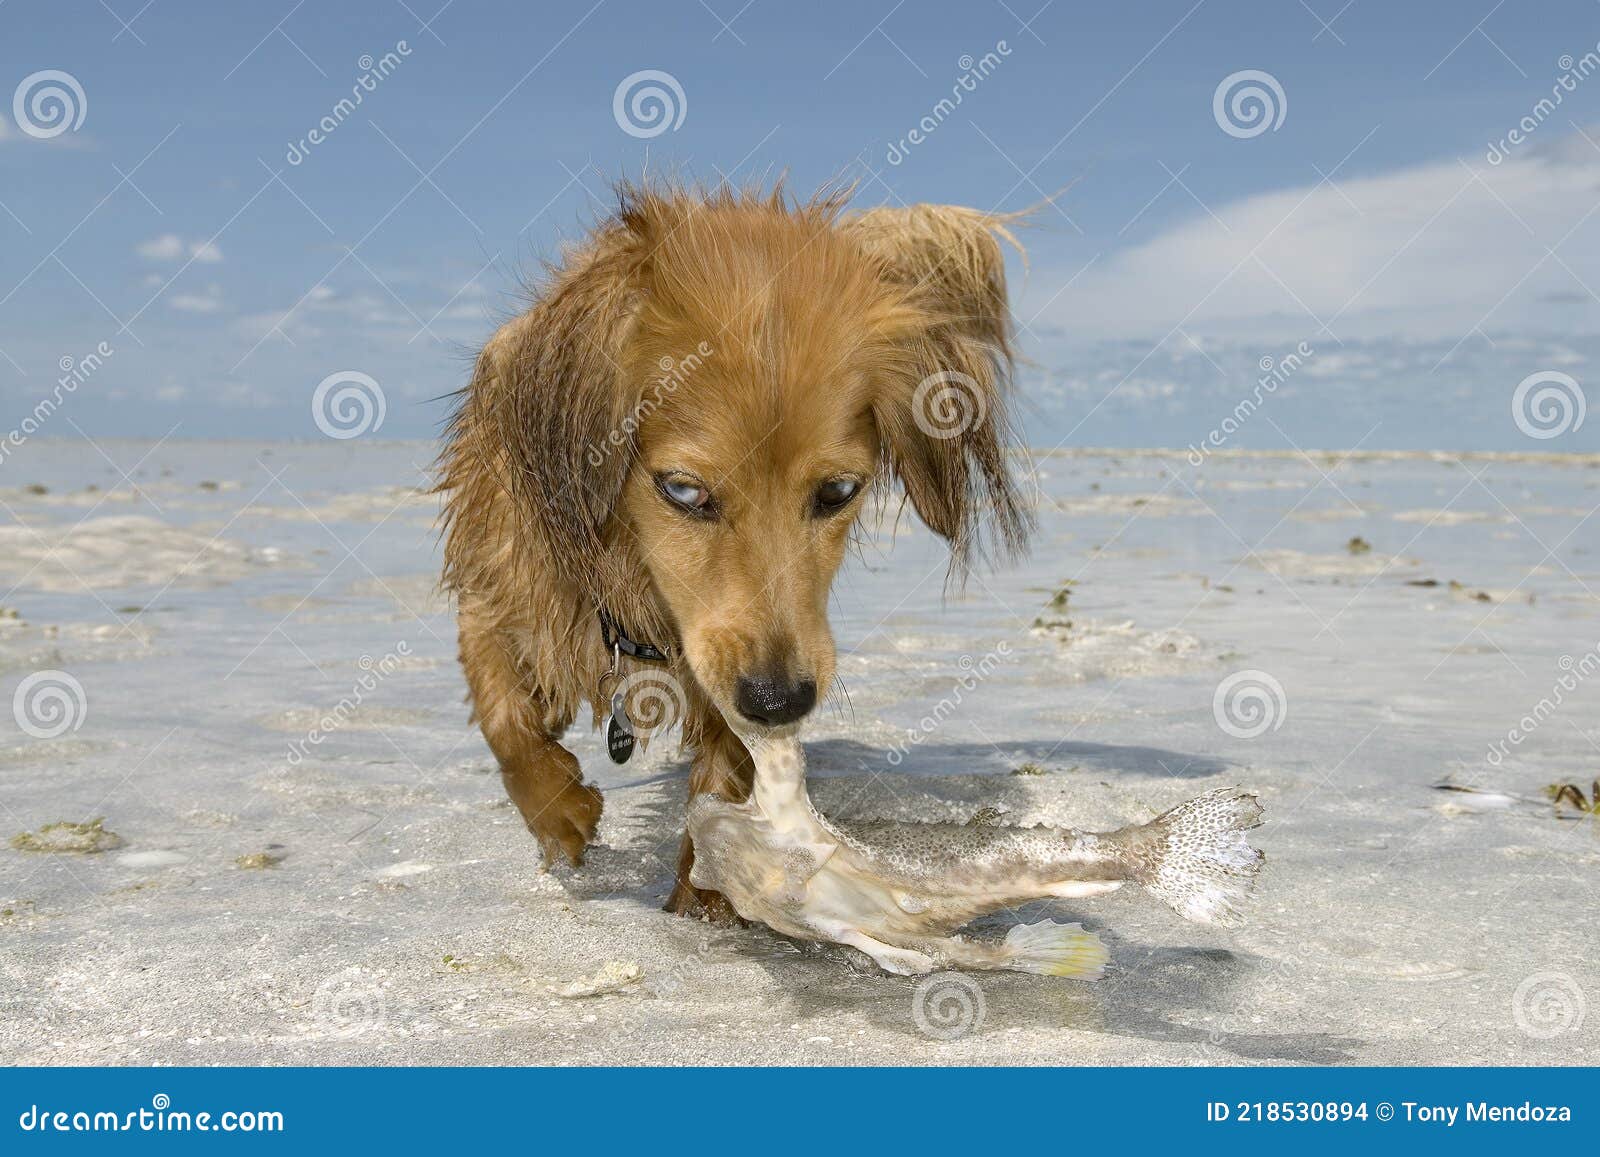 what happens if a dog eats a dead fish